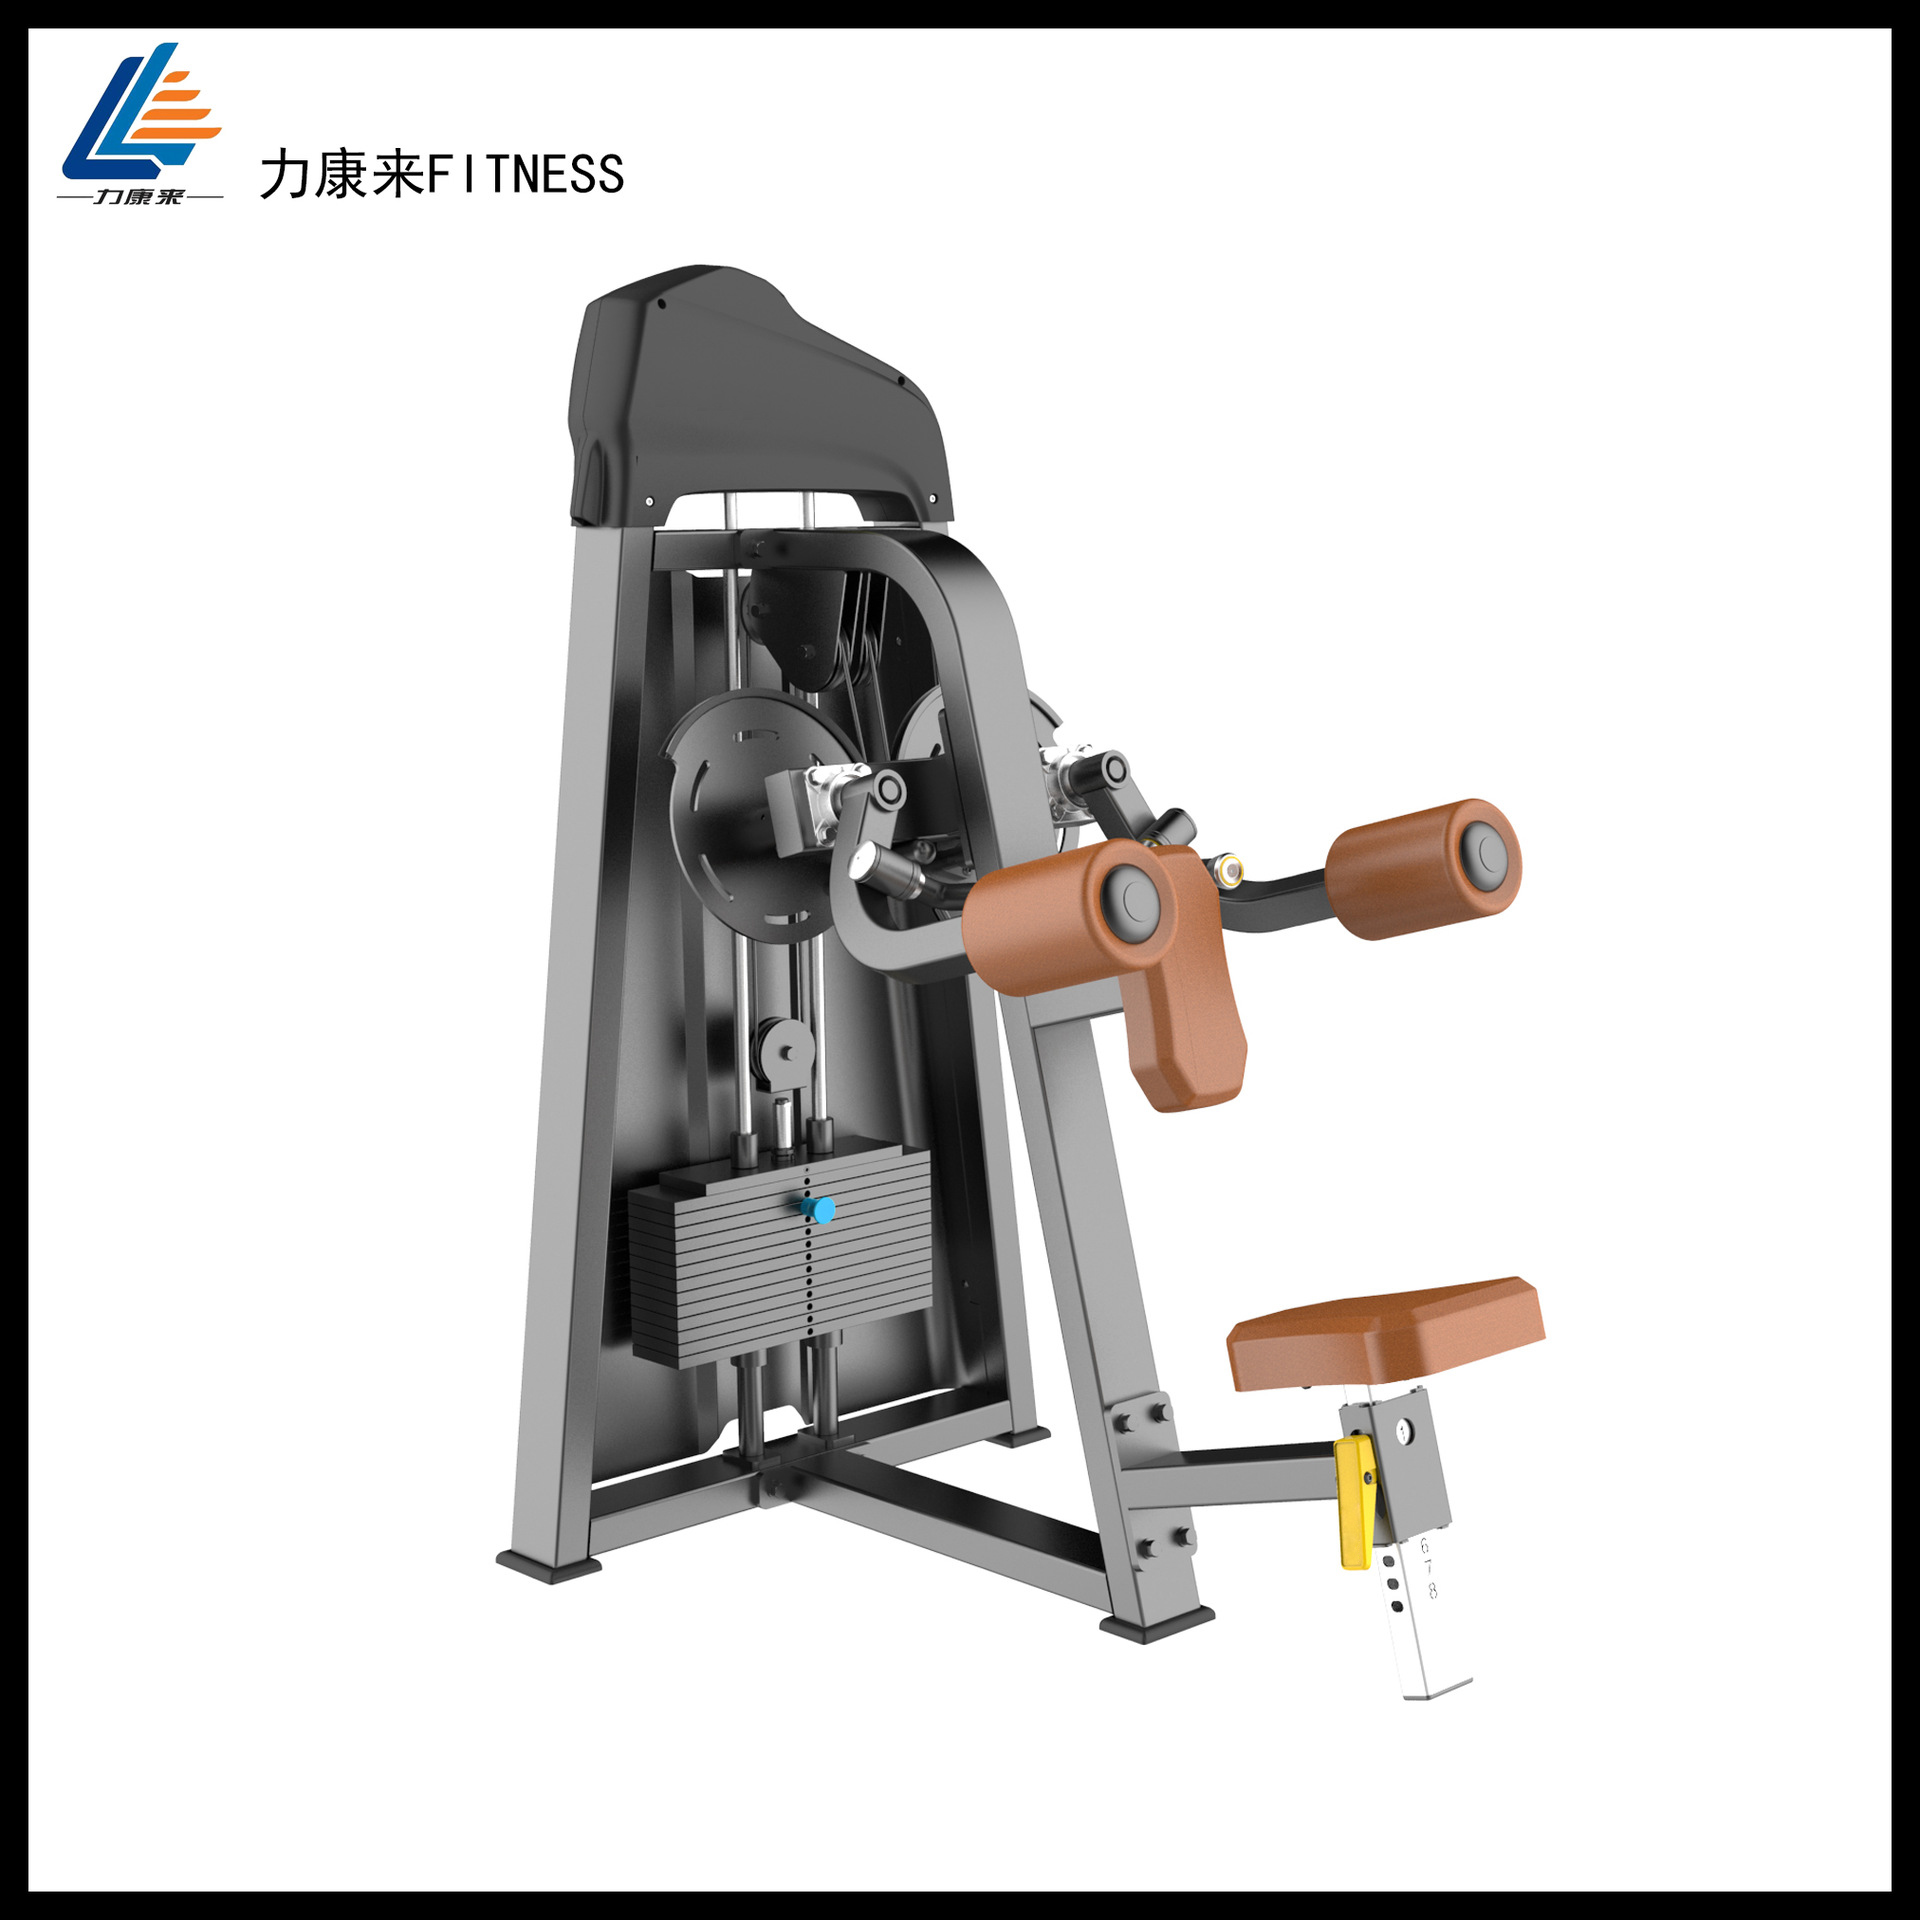 运动休闲 健身器材 组合健身器械 力康来商用 必确肩部训练器 健身房